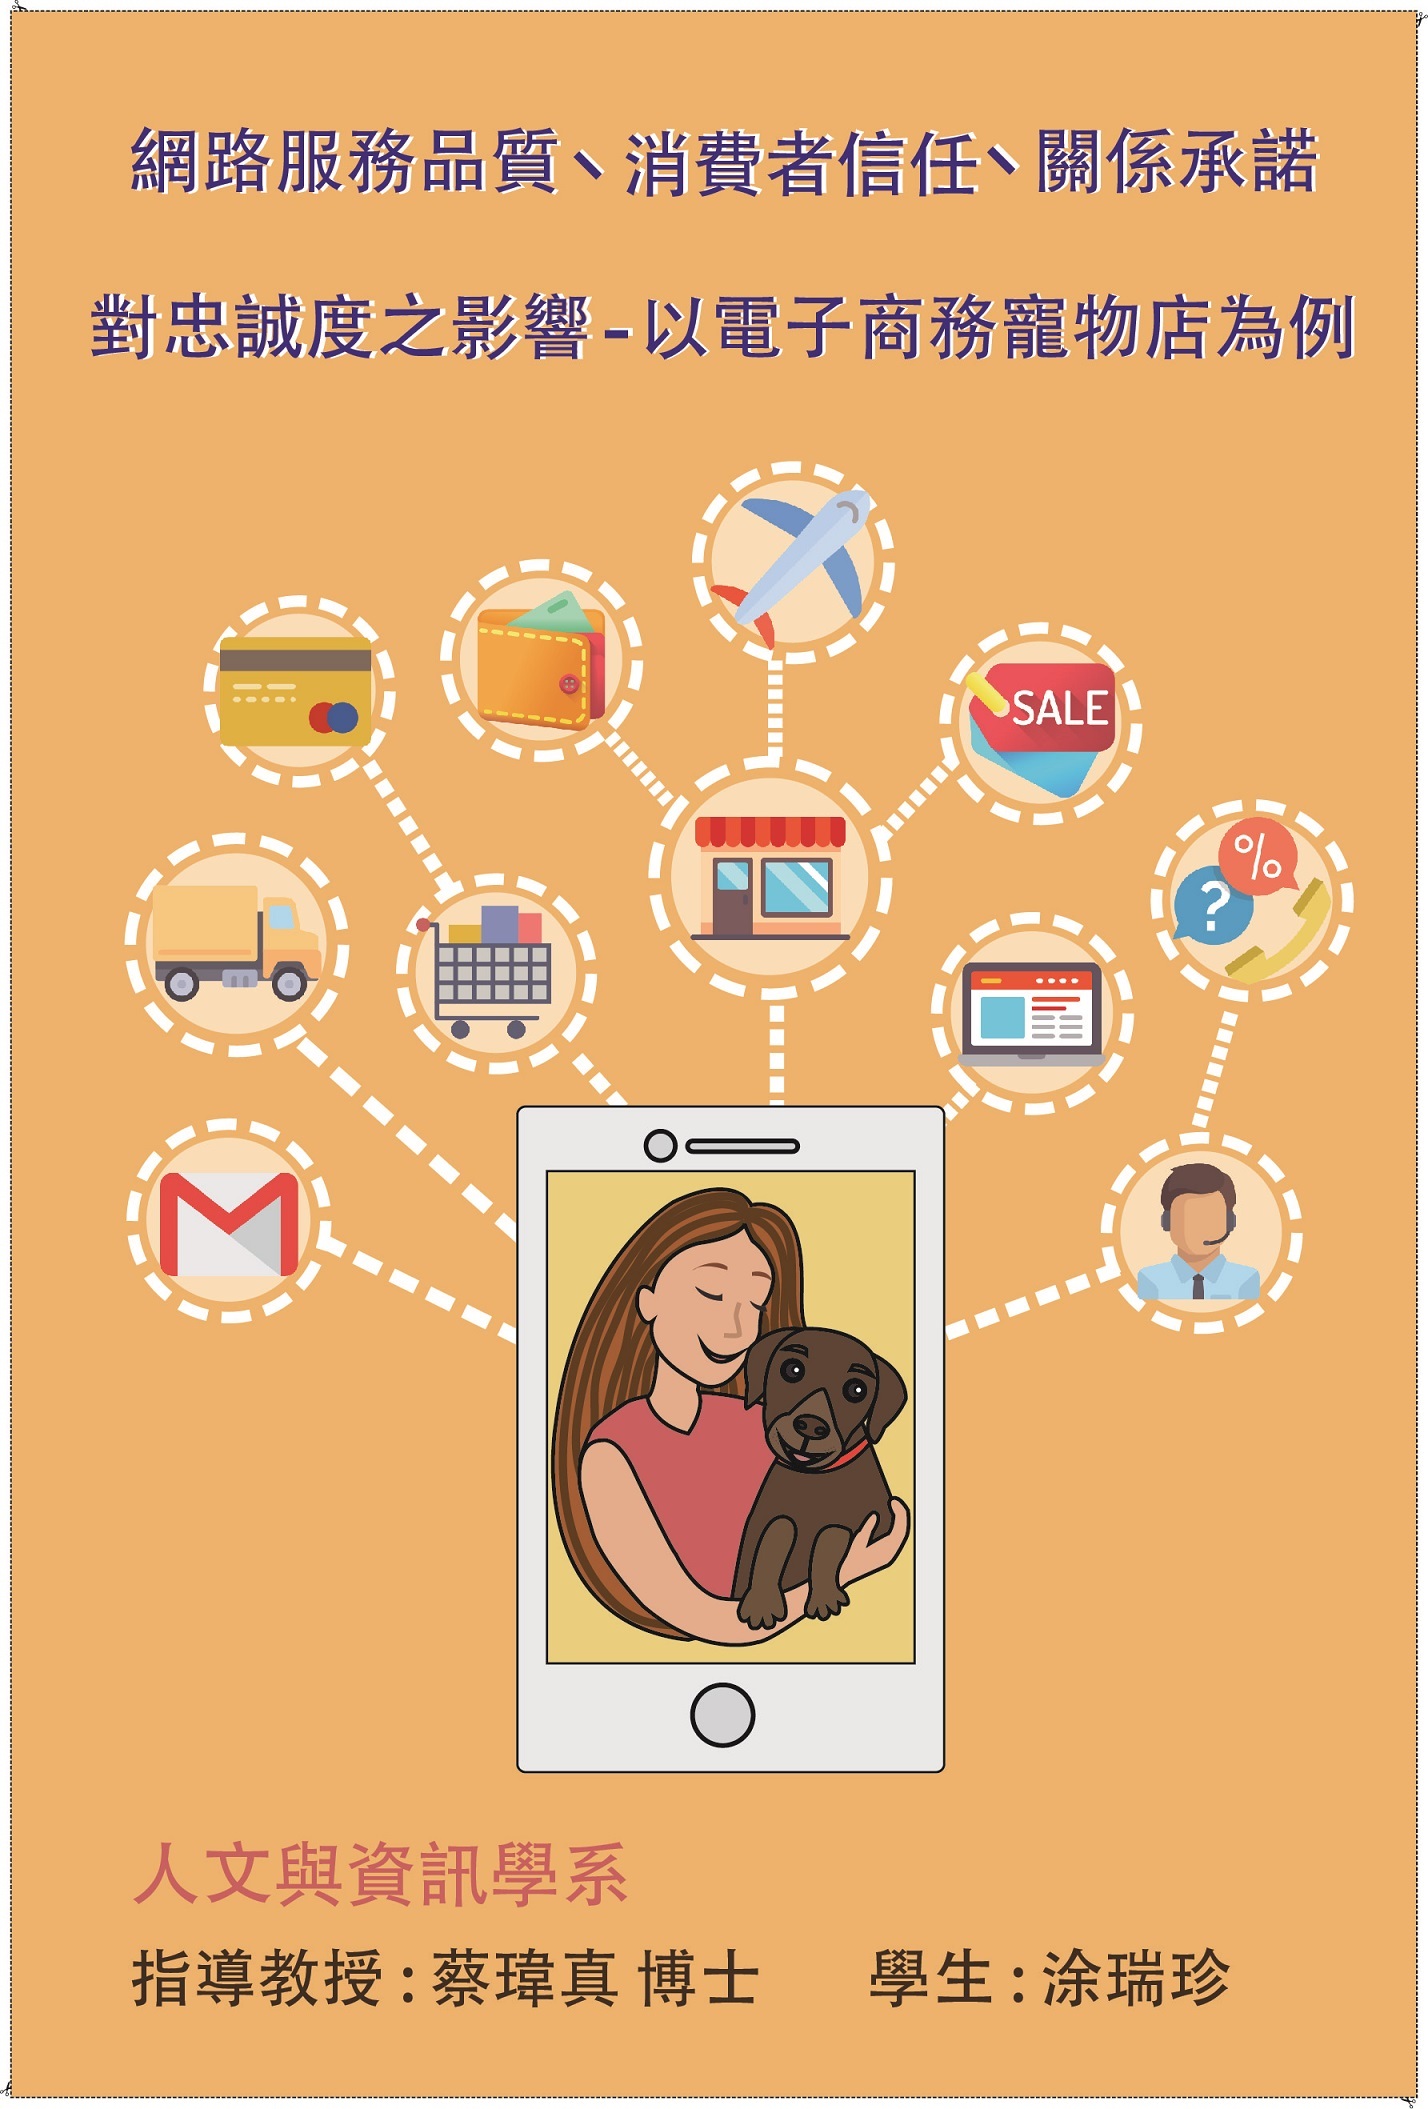 網路服務品質、消費者信任、關係承諾對忠誠度之影響 -以電子商務寵物店 為例